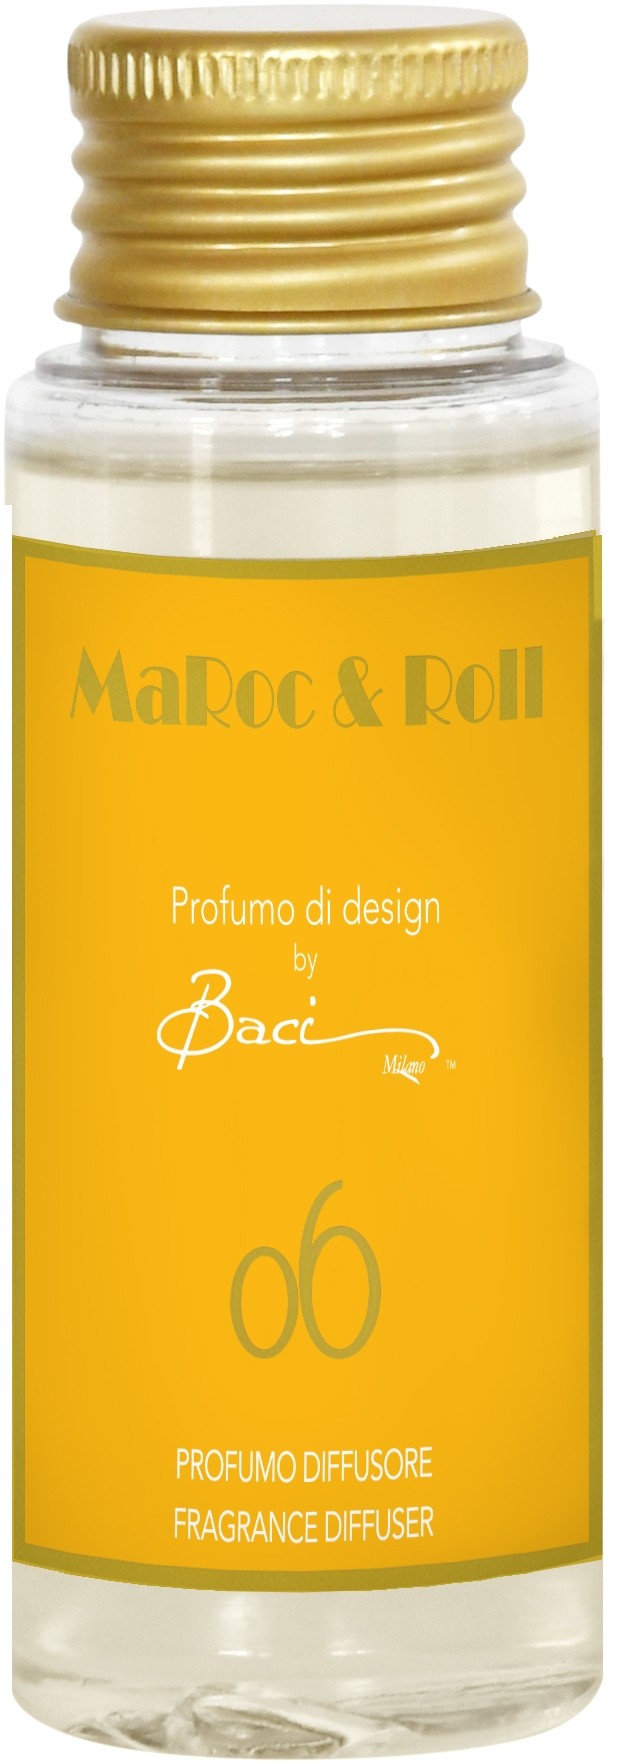 Fragranza Diffusore 50 ml MaRoc & Roll 06 REF50.06